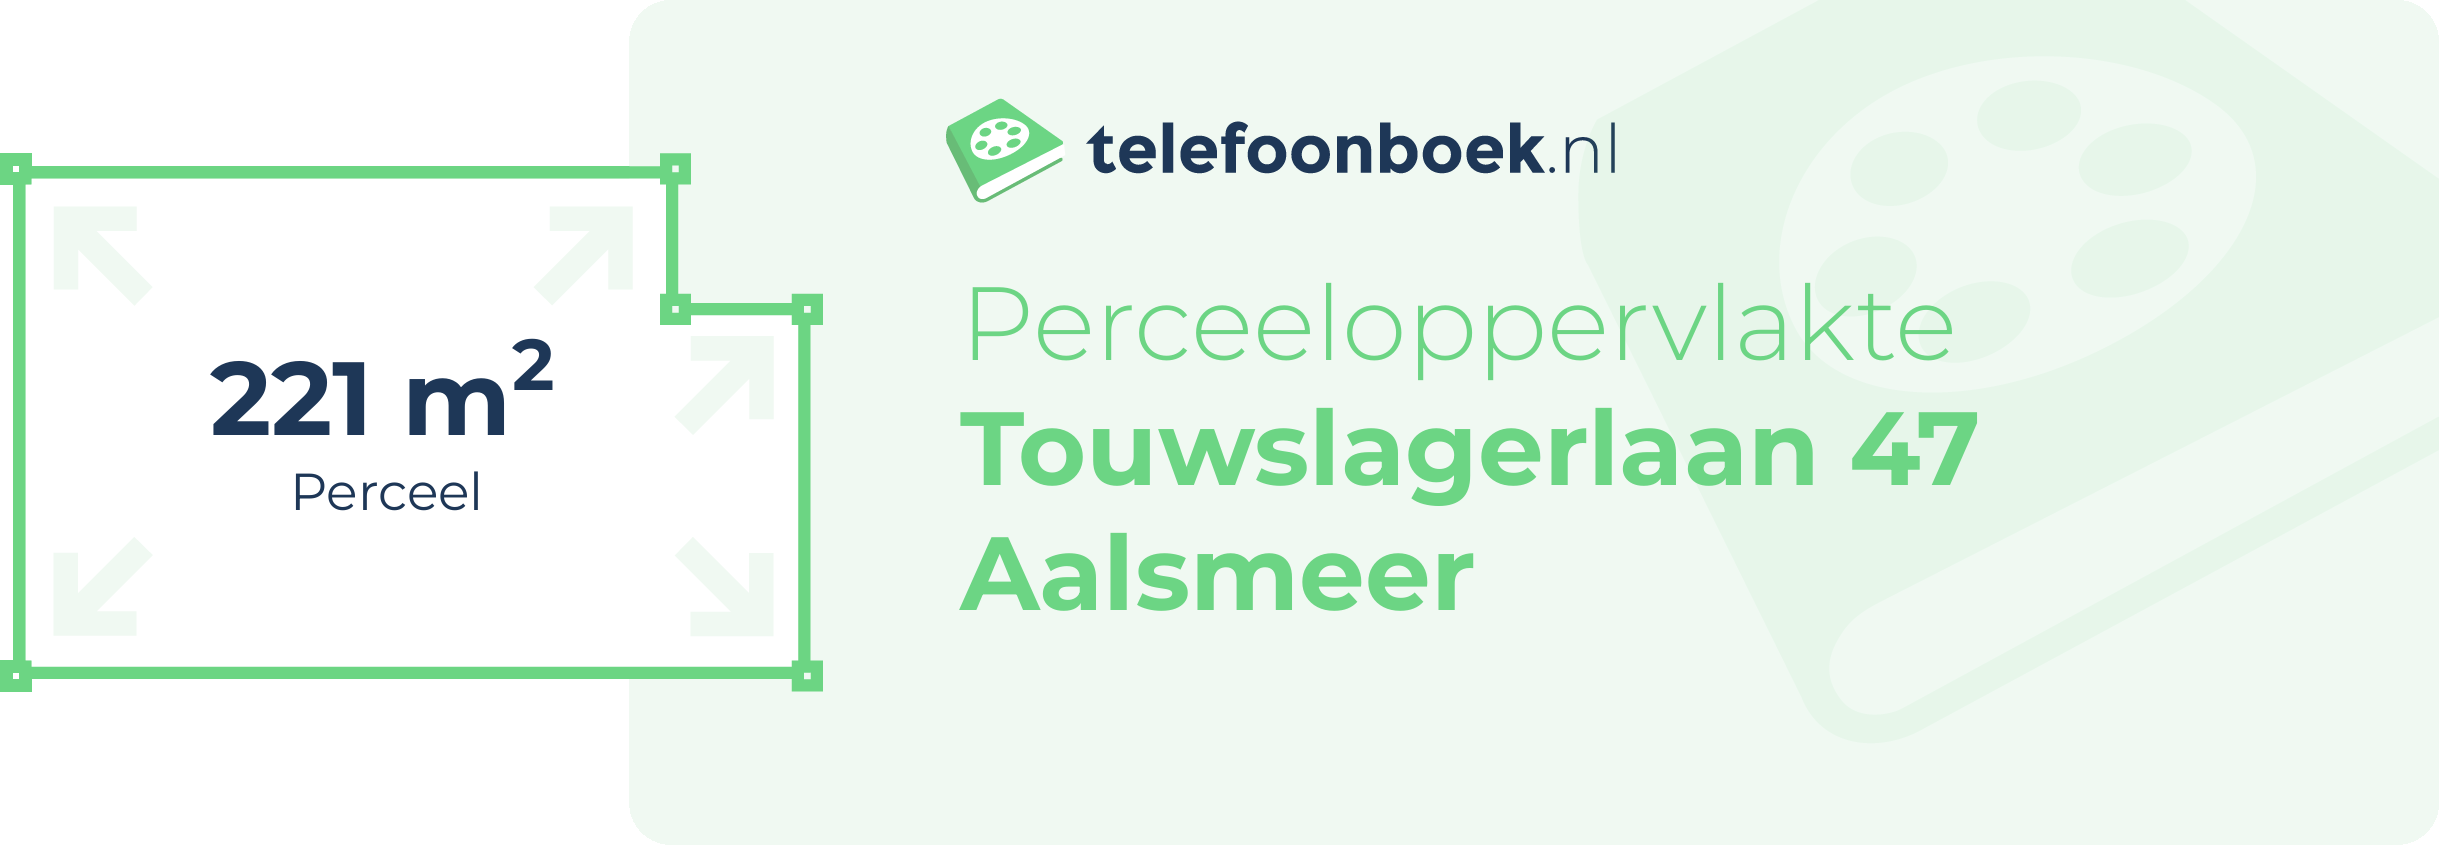 Perceeloppervlakte Touwslagerlaan 47 Aalsmeer